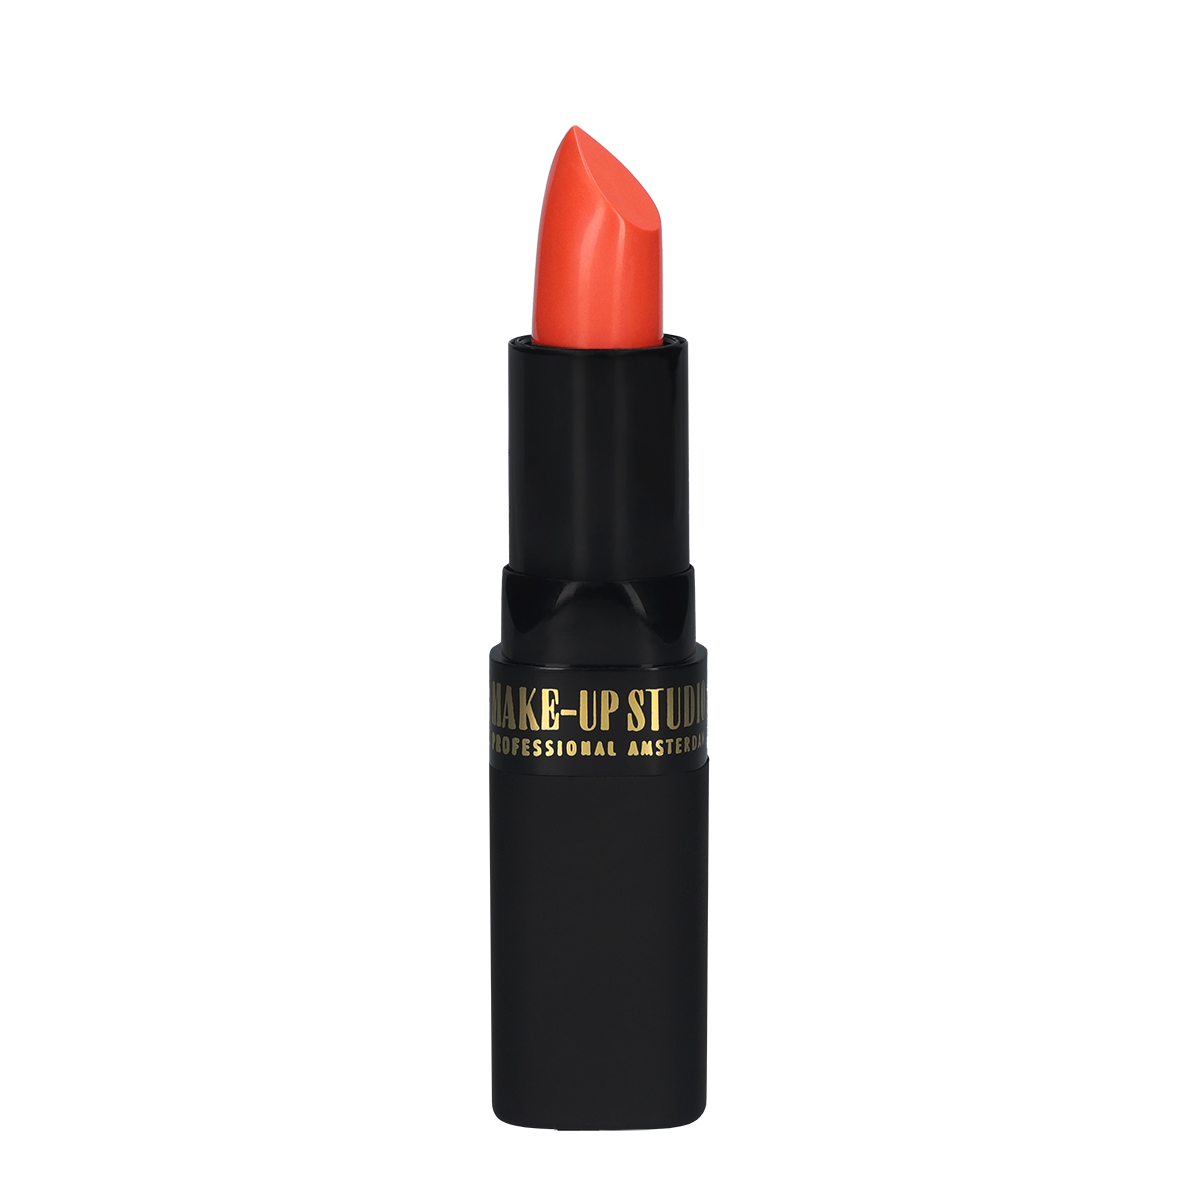 Make-up Studio Lipstick Lippenstift - 26